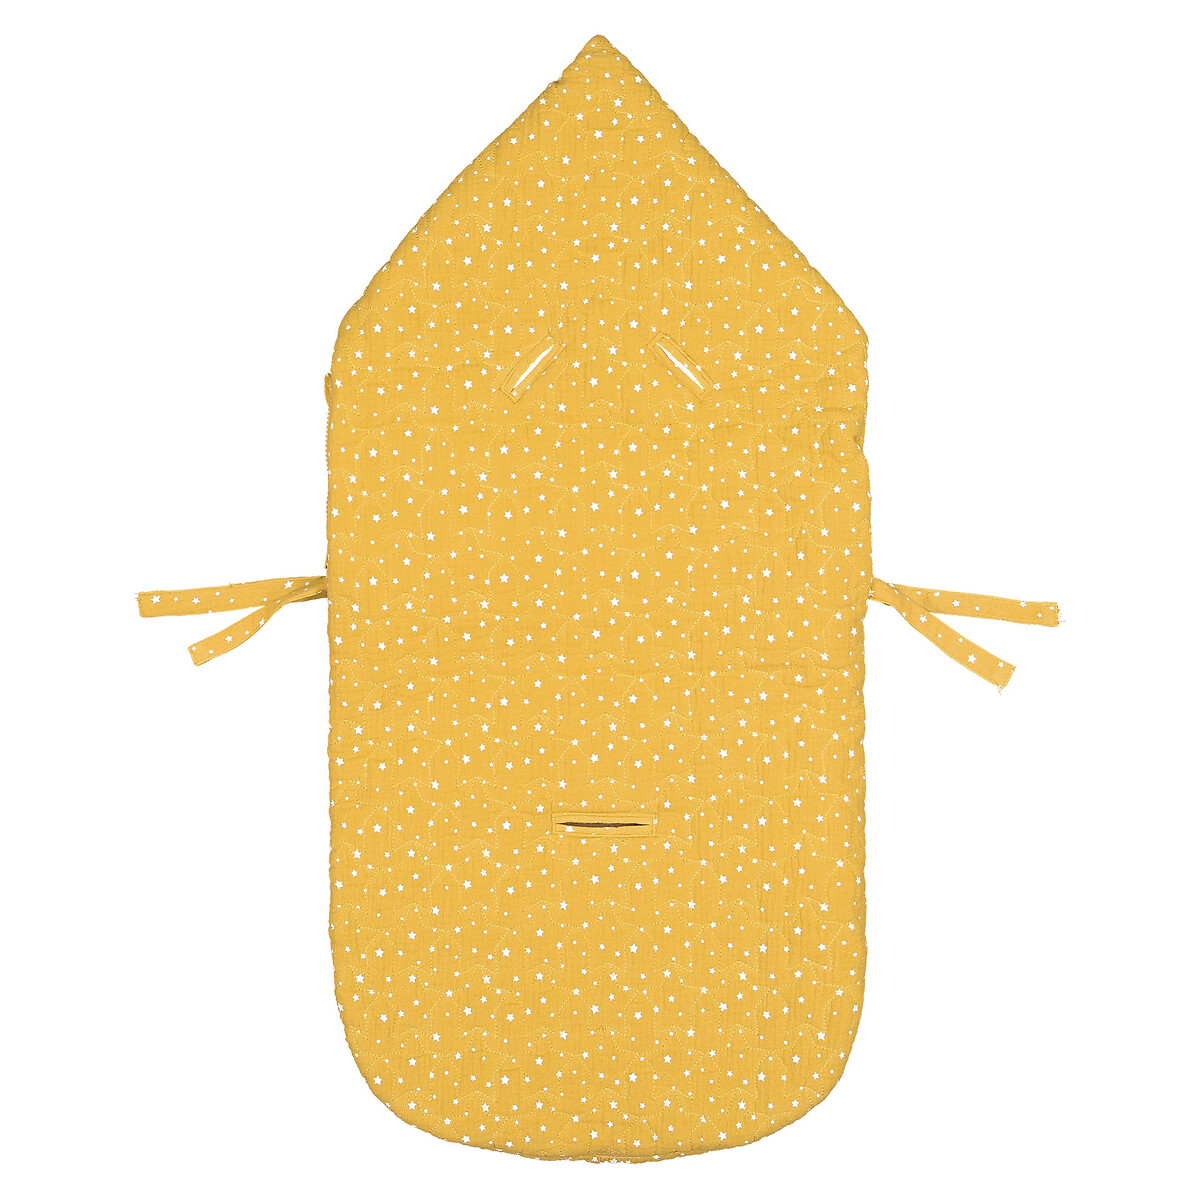 Конверт La Redoute Для новорожденного с капюшоном с рисунком из газовой хлопчатобумажной ткани единый размер желтый - фото 3